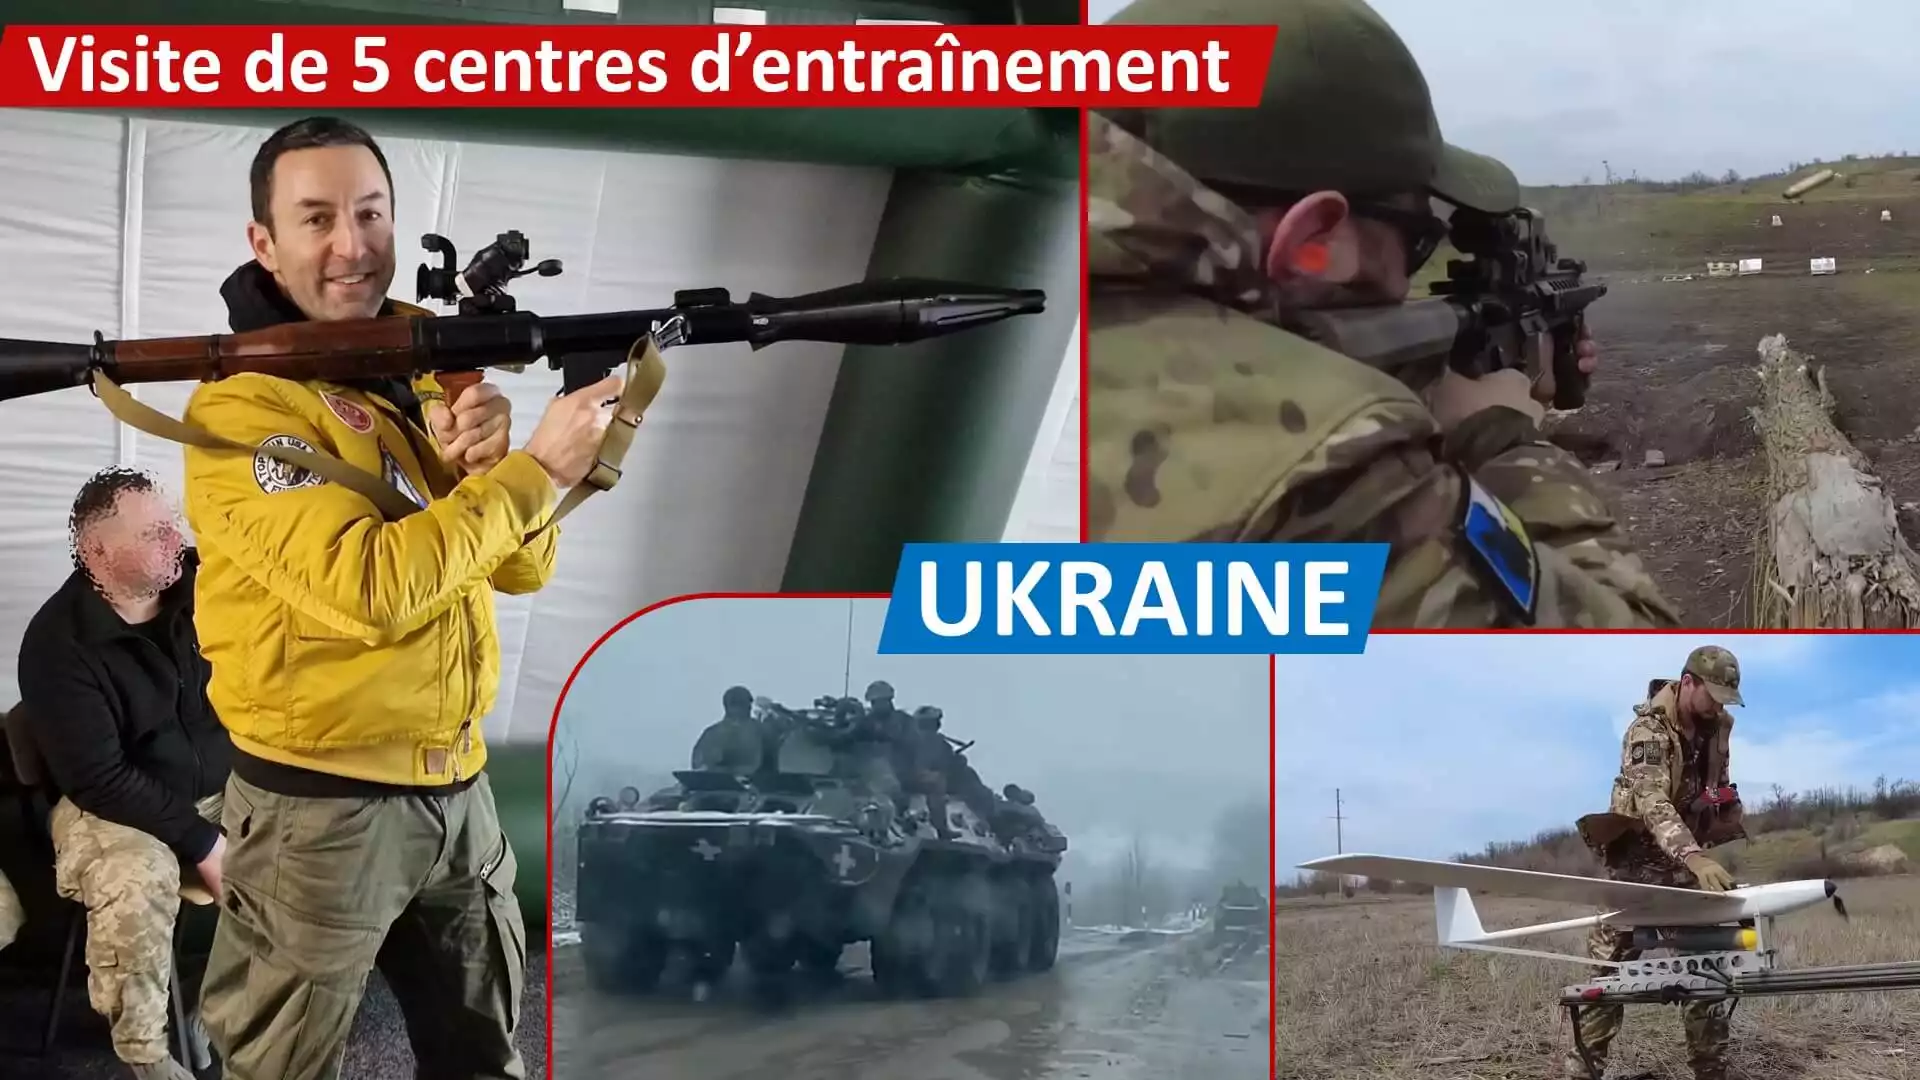 [UKRAINE] Visite de 5 centres d'entraînement militaire: champs de tir avec Berlioz Team, blindés...